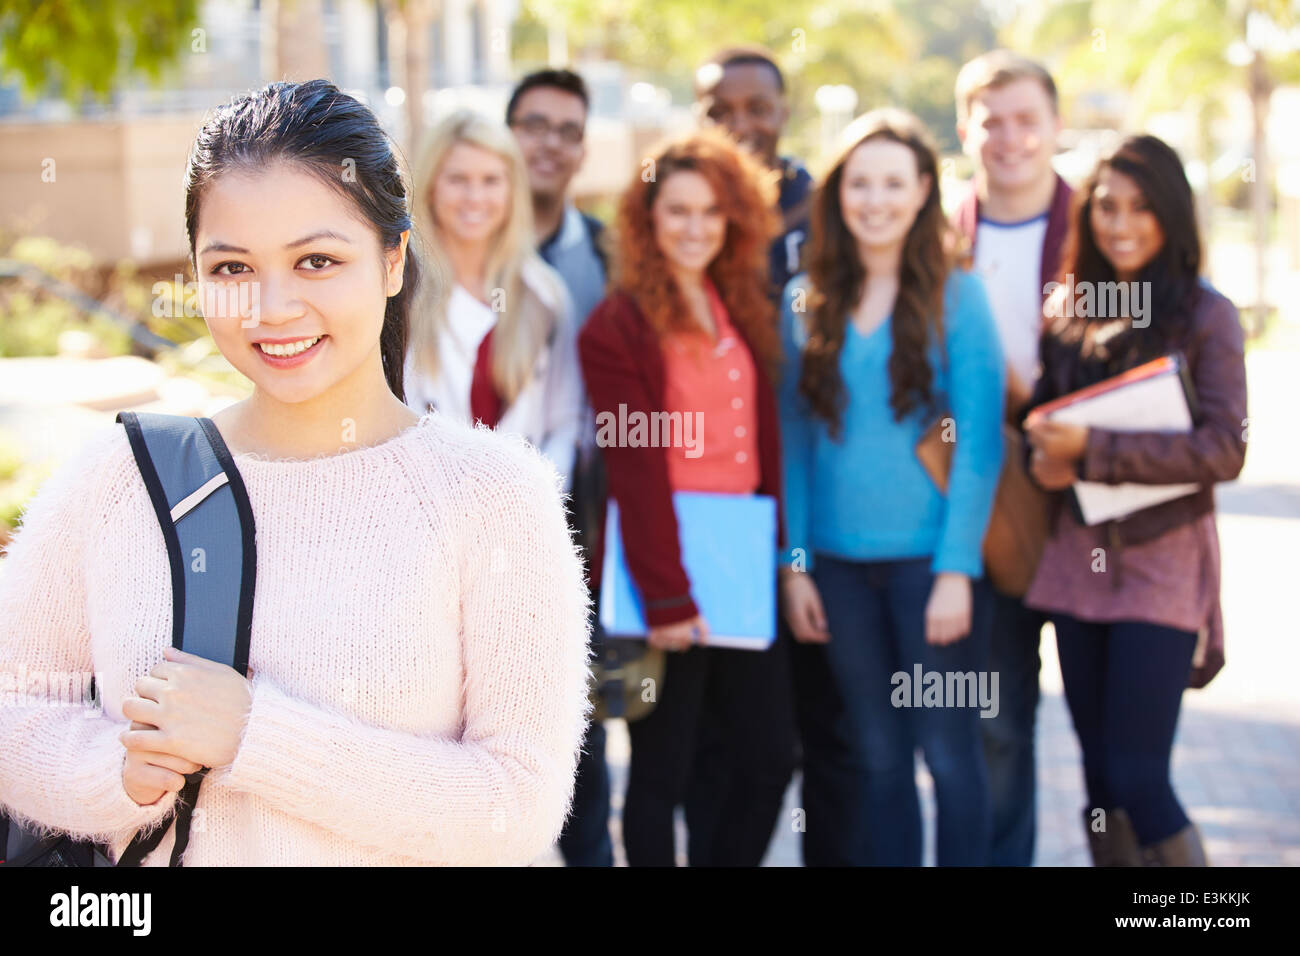 Retrato de estudiantes universitarios en el exterior en el Campus Foto de stock